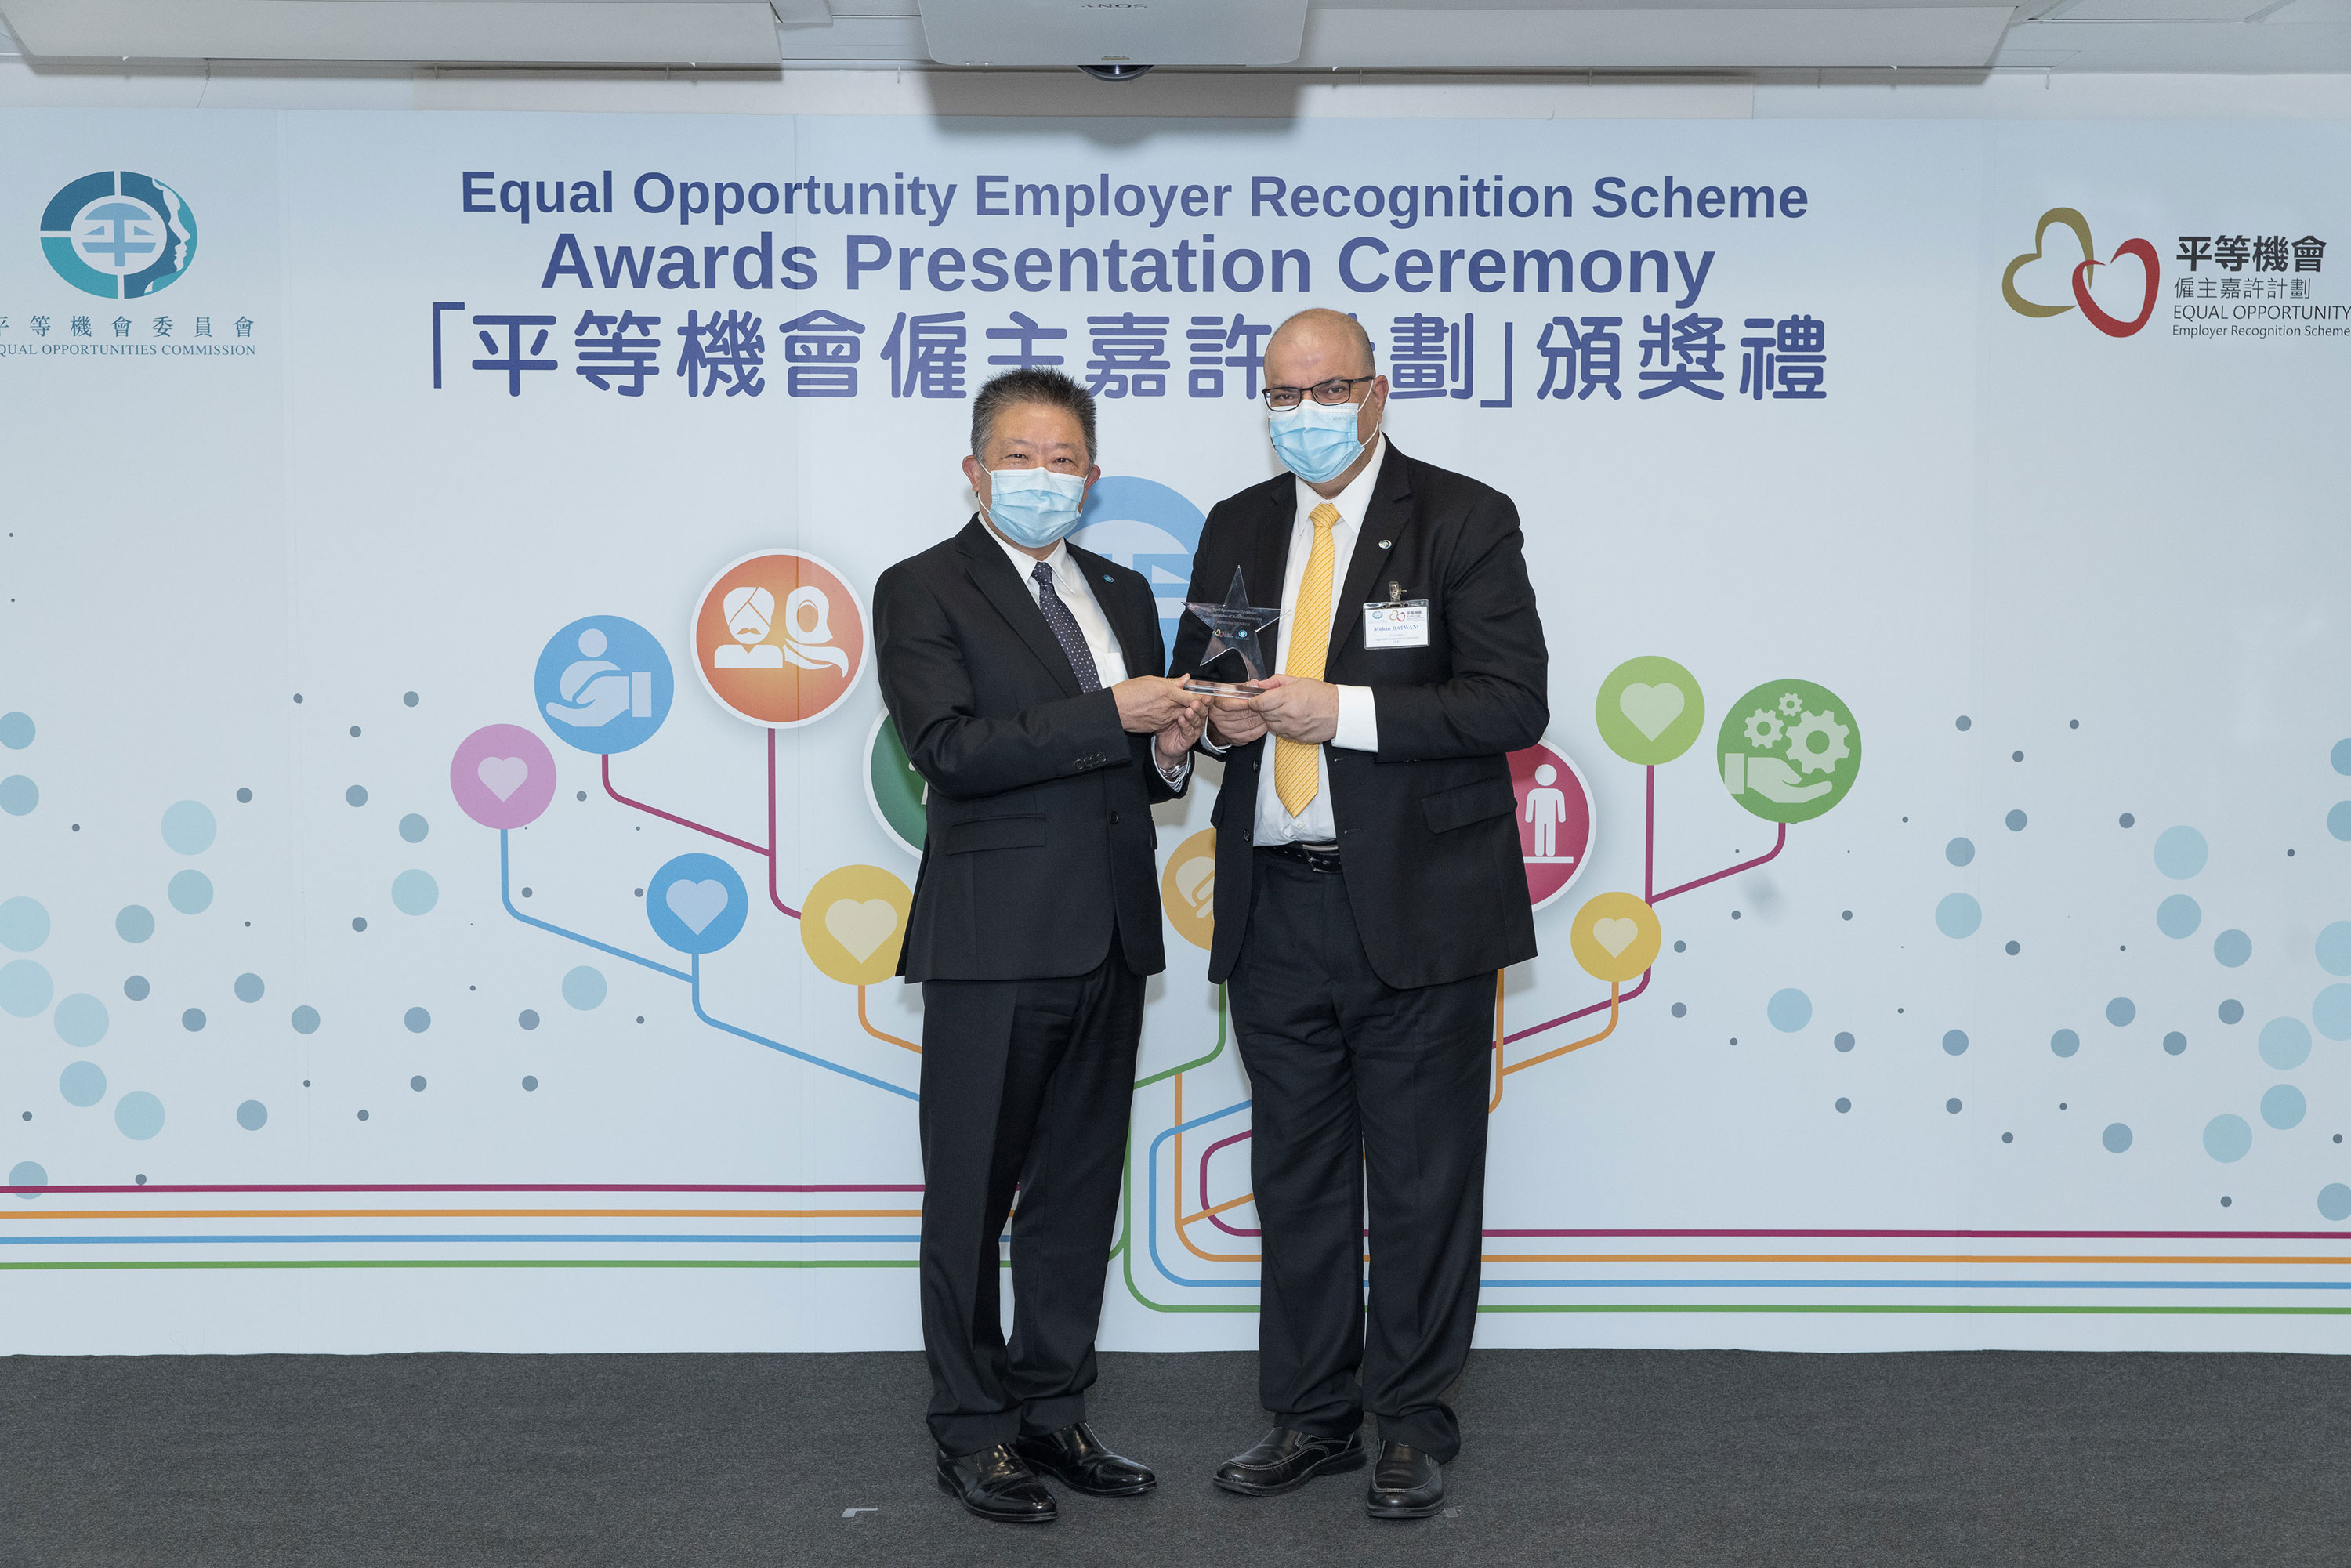 平機會主席朱敏健先生, IDS (左)頒發紀念品予出任平等機會僱主嘉許計劃評審團成員的平機會委員高朗先生(右)。